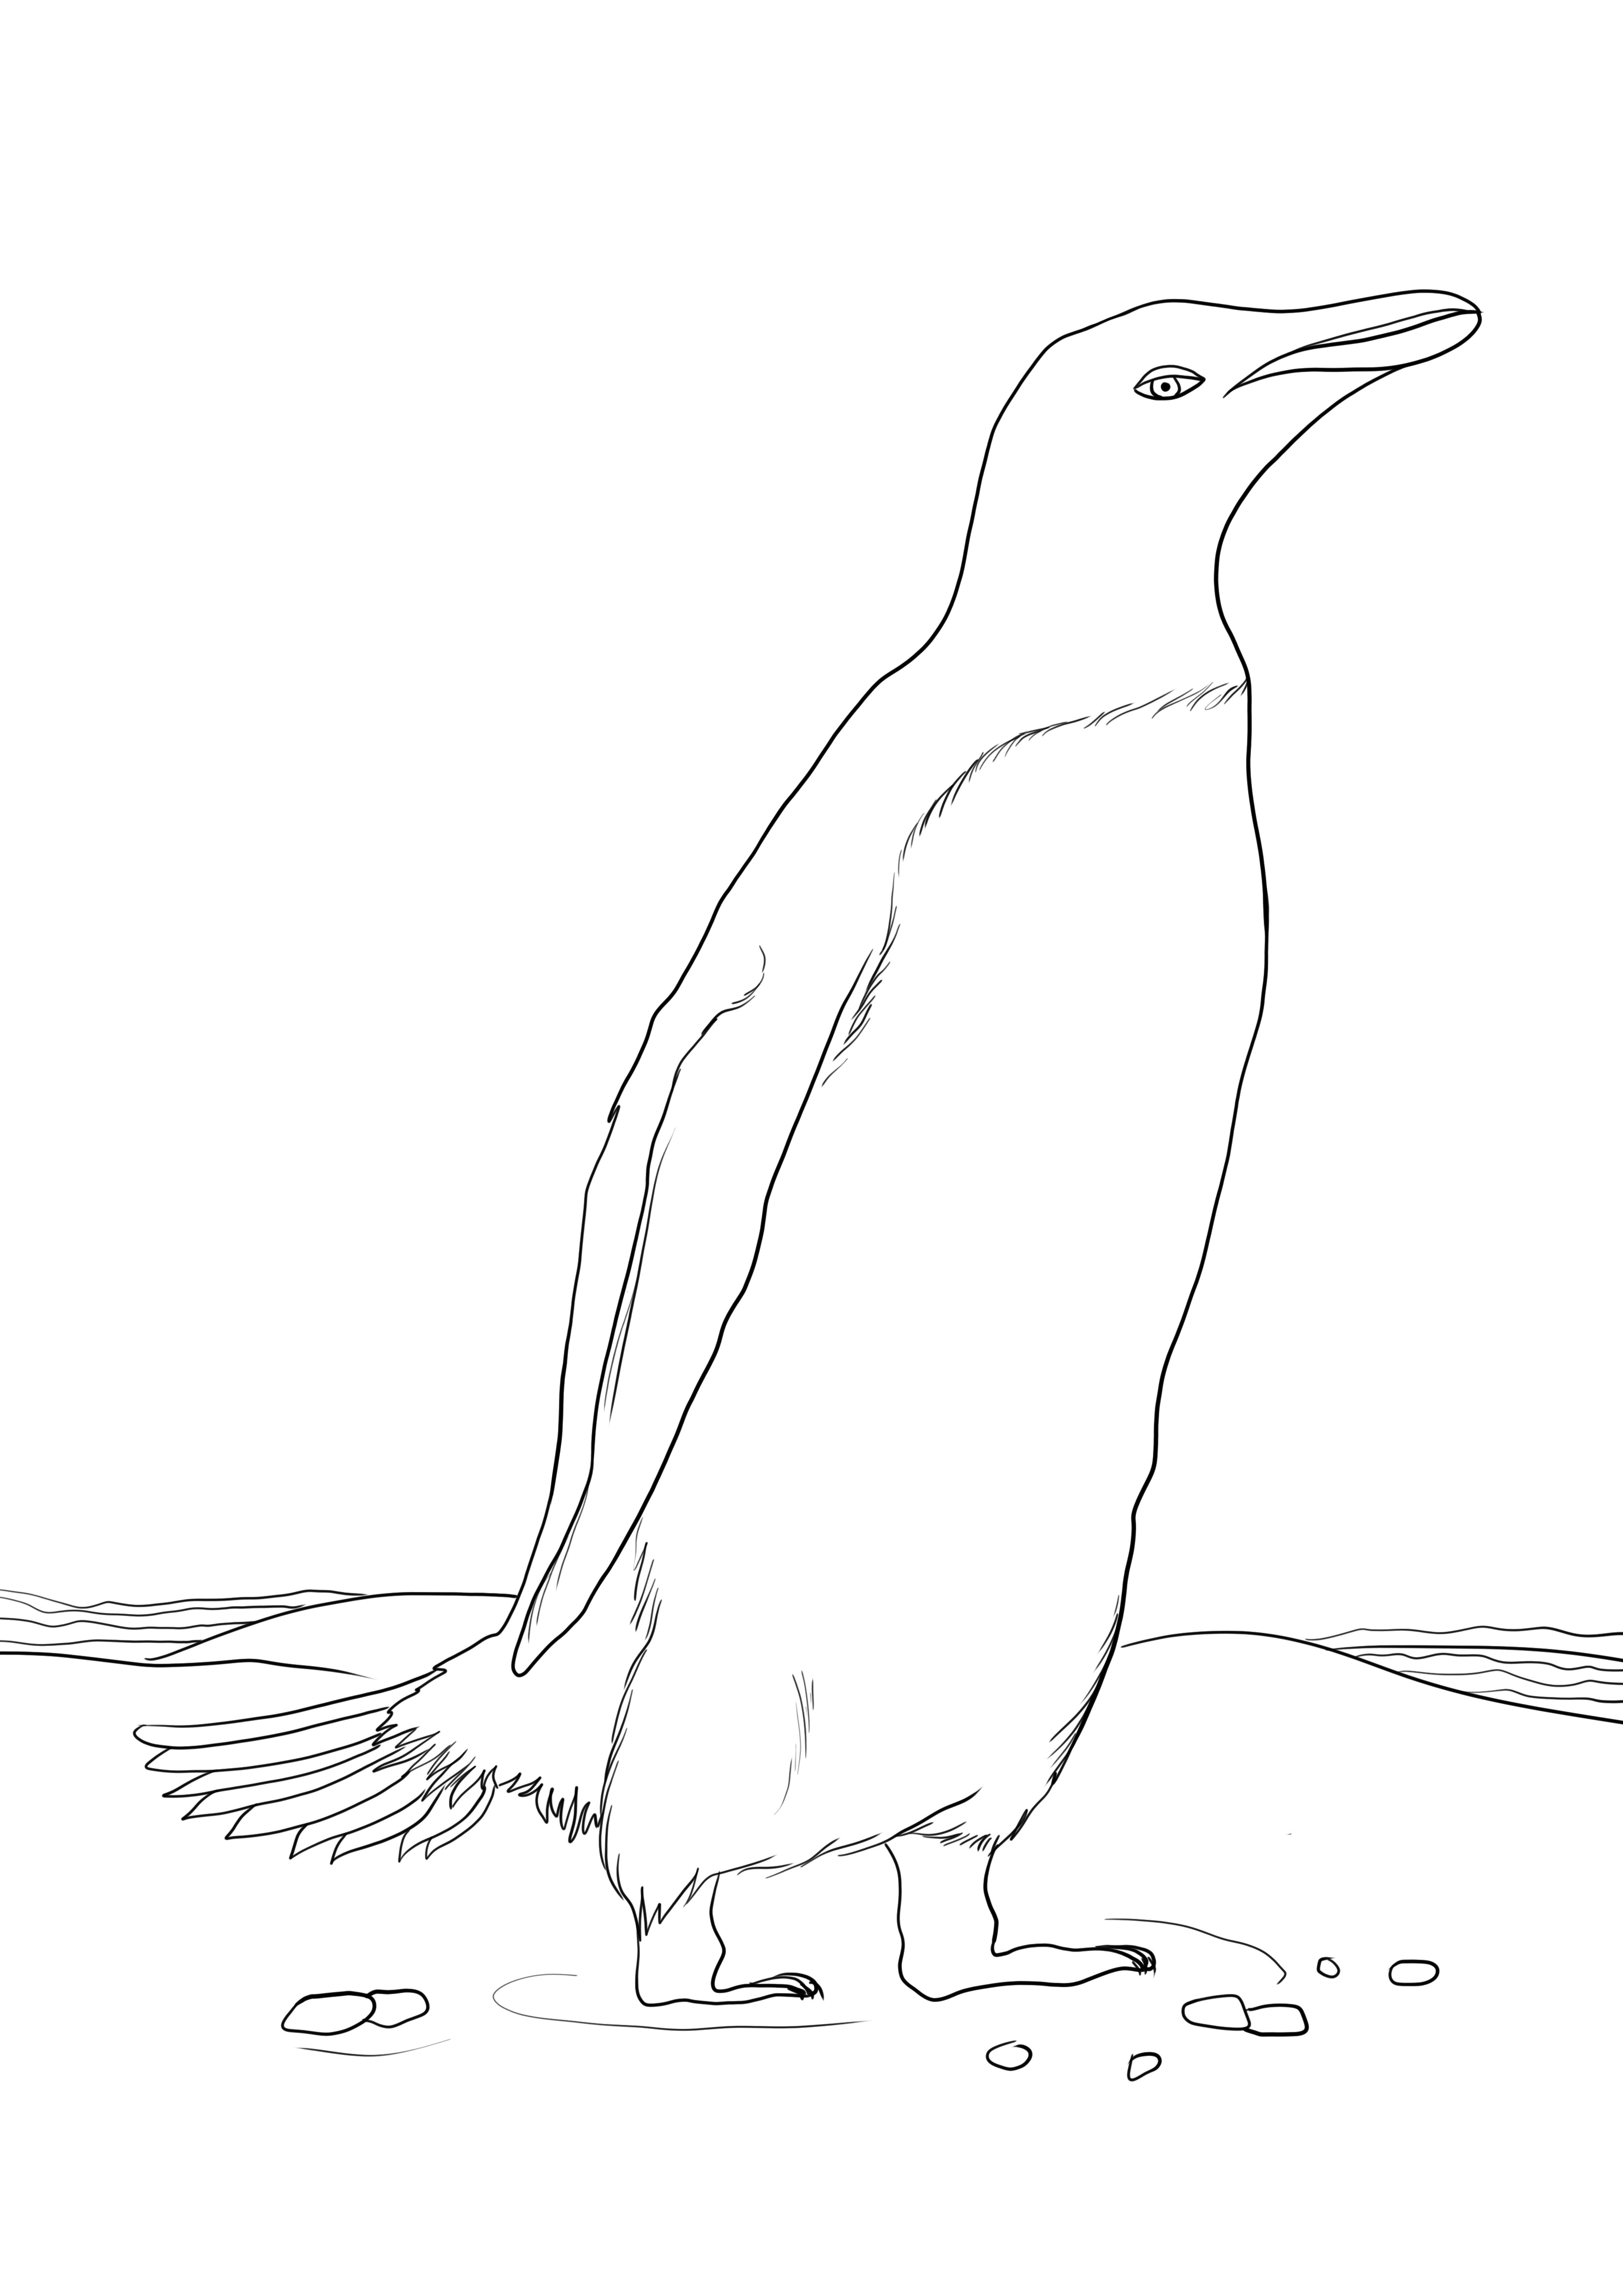 Gambar penguin untuk diwarnai dan dicetak gratis